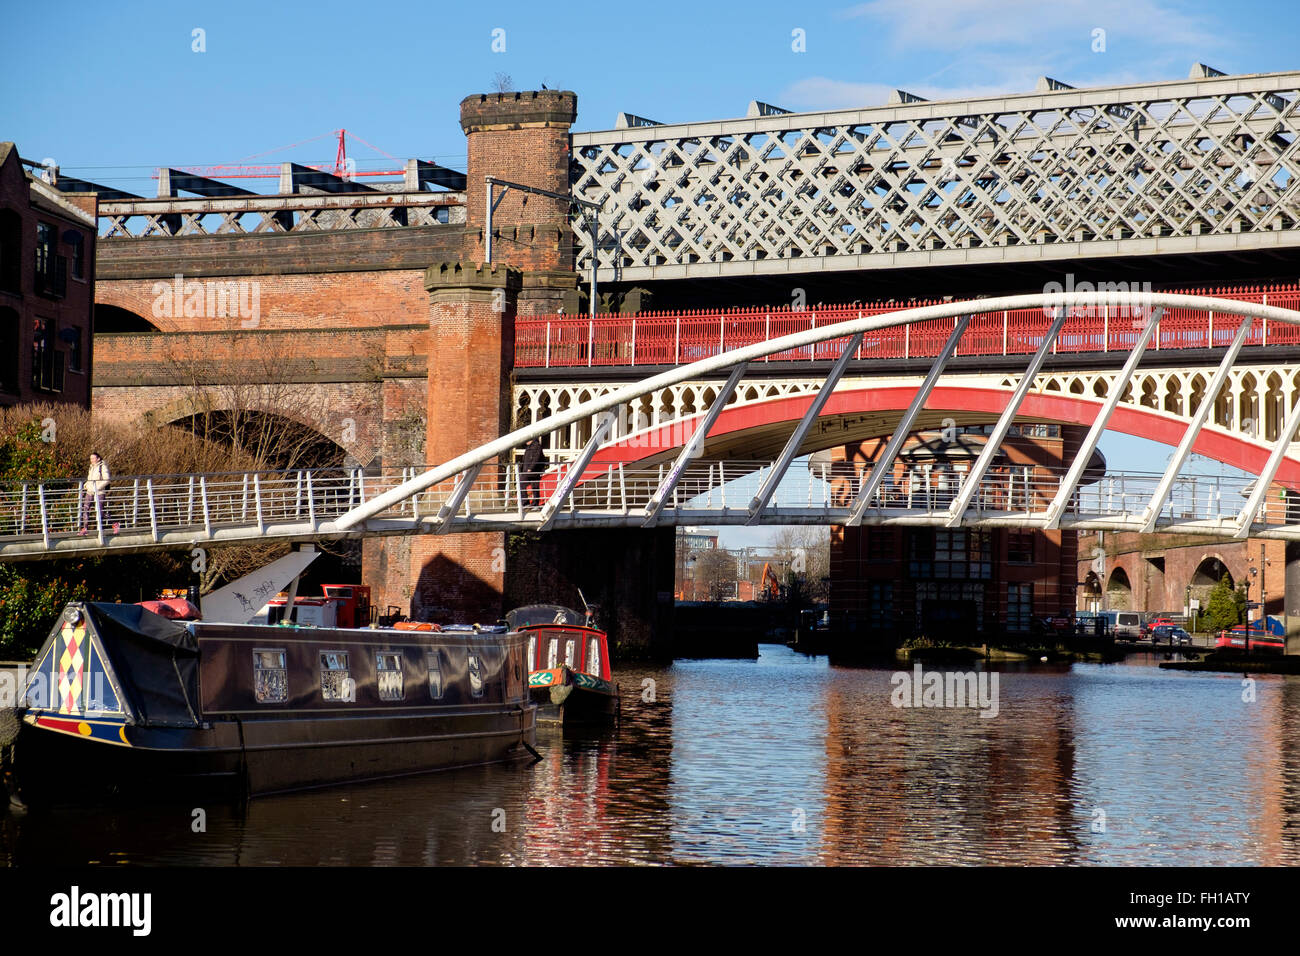 Manchester, UK - 15 Février 2016 : fonte victorienne viaducs de chemin de fer sur le canal du bassin à la ville de conservation Banque D'Images